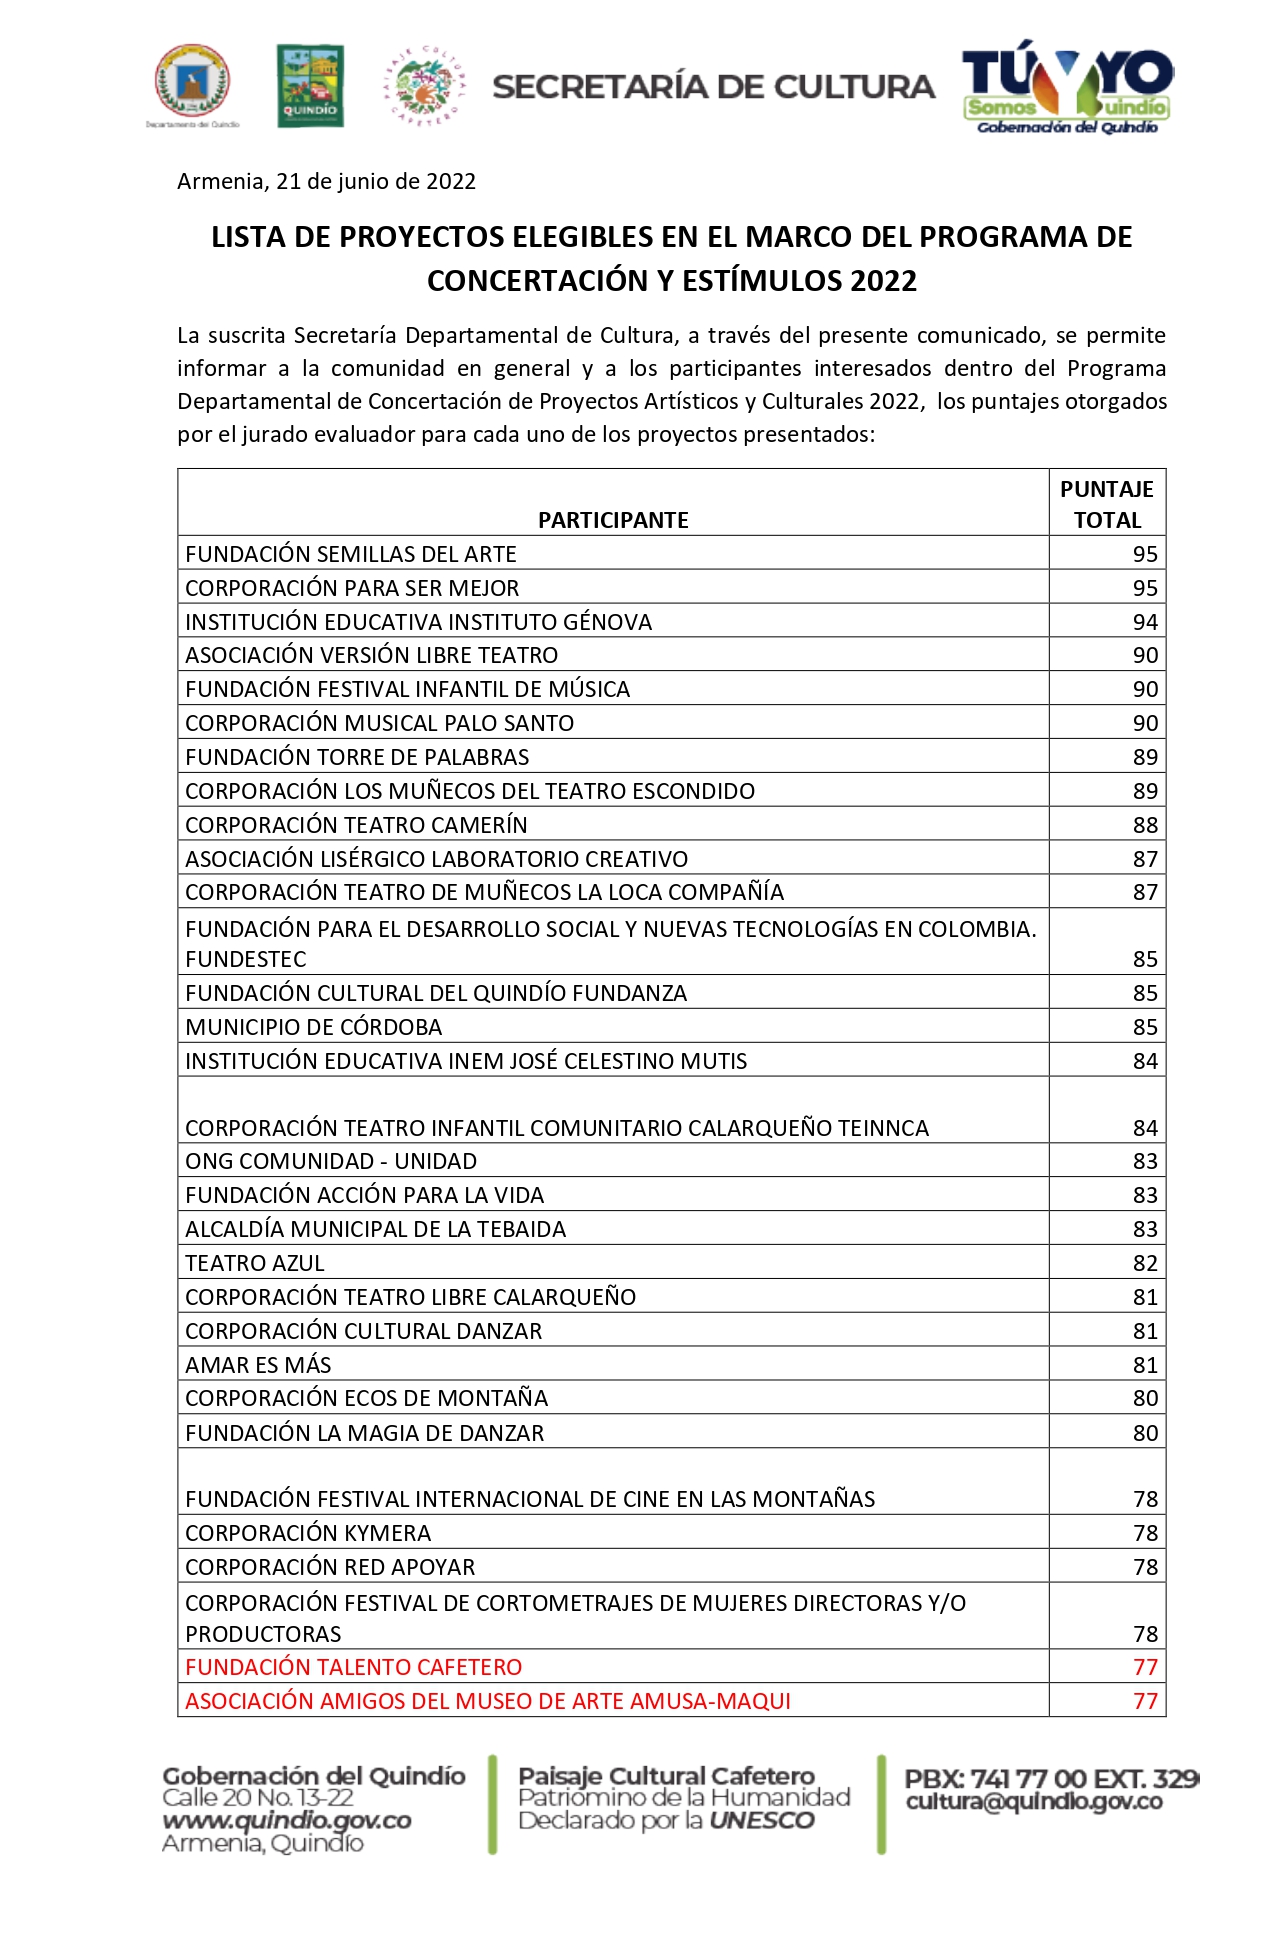 LISTADO_DE_PERSONAS_NATURALES_GANADORAS_CONSERTACIÓN_2022_pages-to-jpg-0001.jpg - 868.79 kB